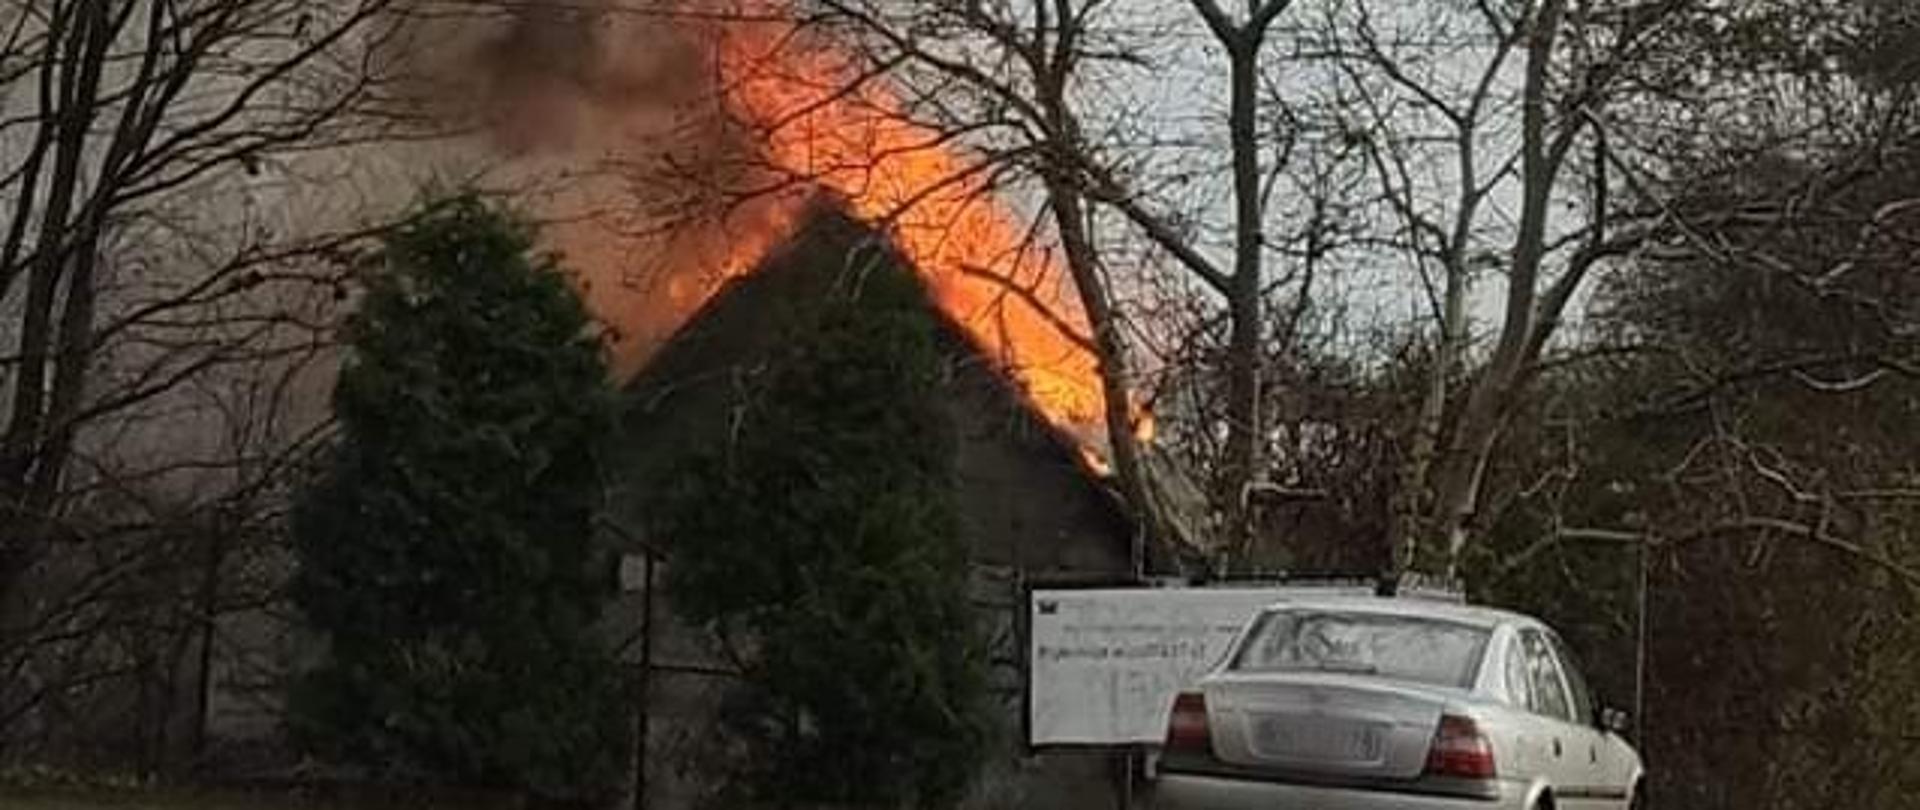 Na zdjęciu widać zarys domu całego w płomieniach.